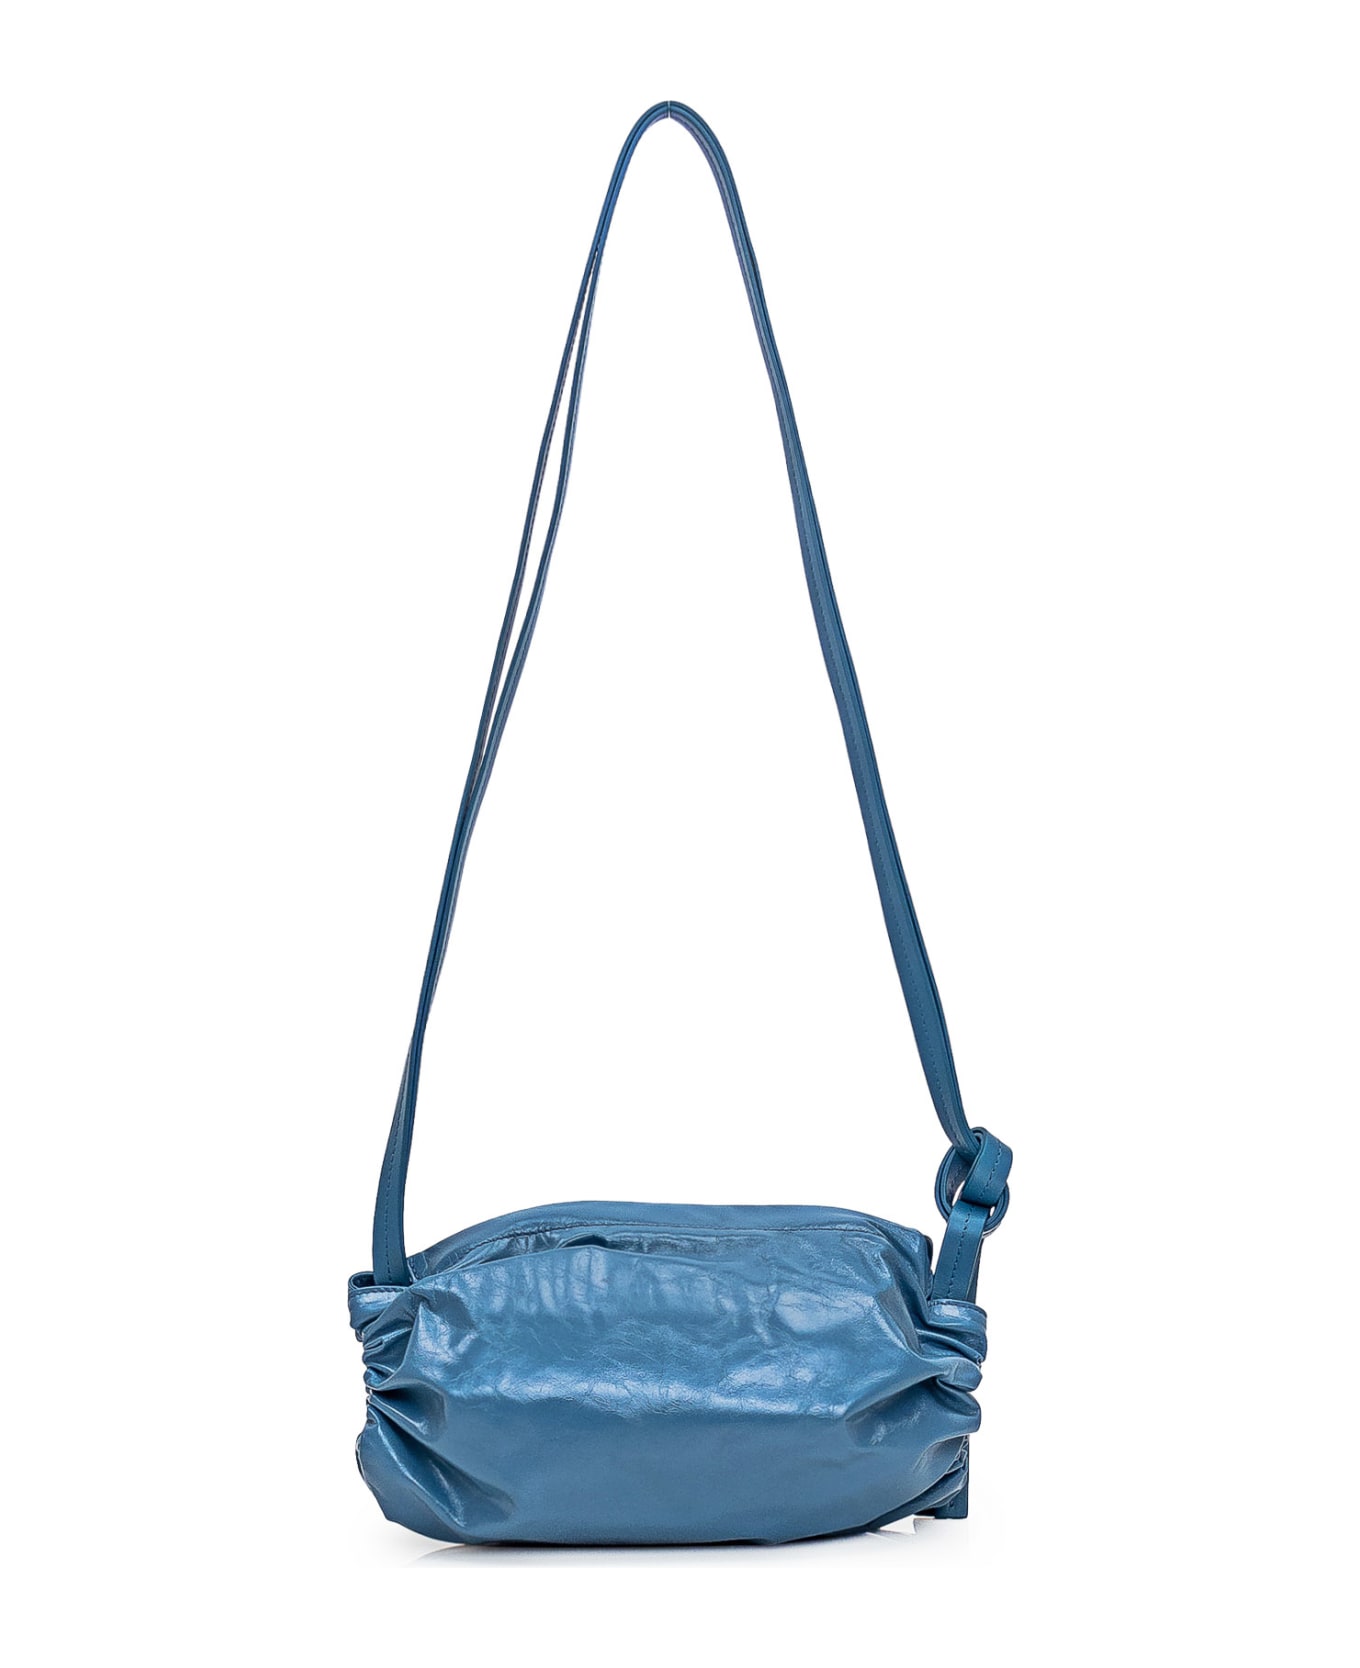 Jil Sander Leather Bag - BLU